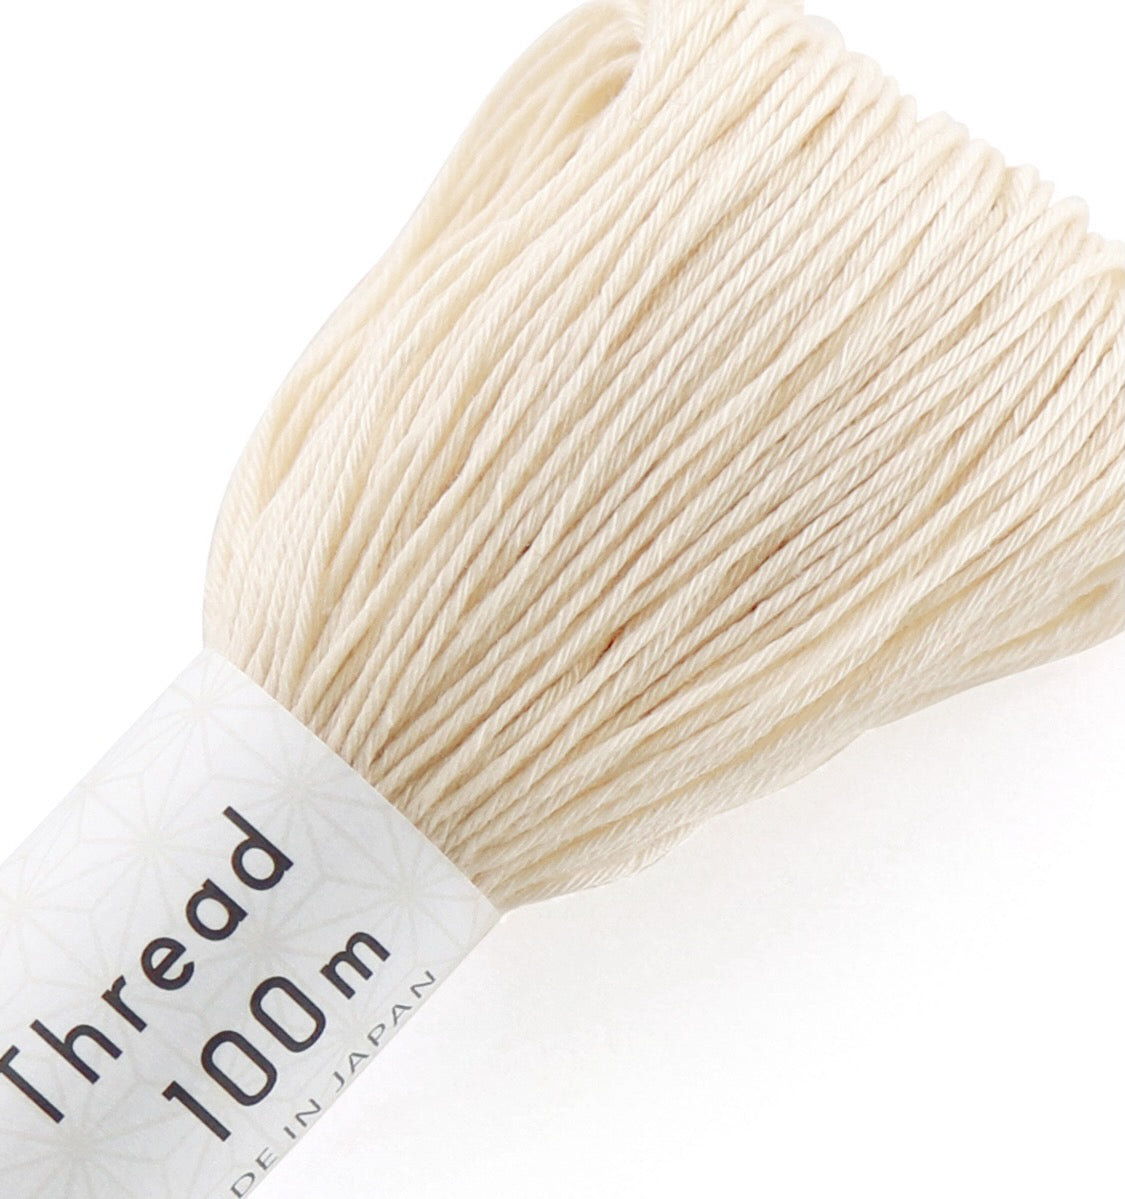 Sashiko Thread, Olympus 100 meter skein, Off-white #102